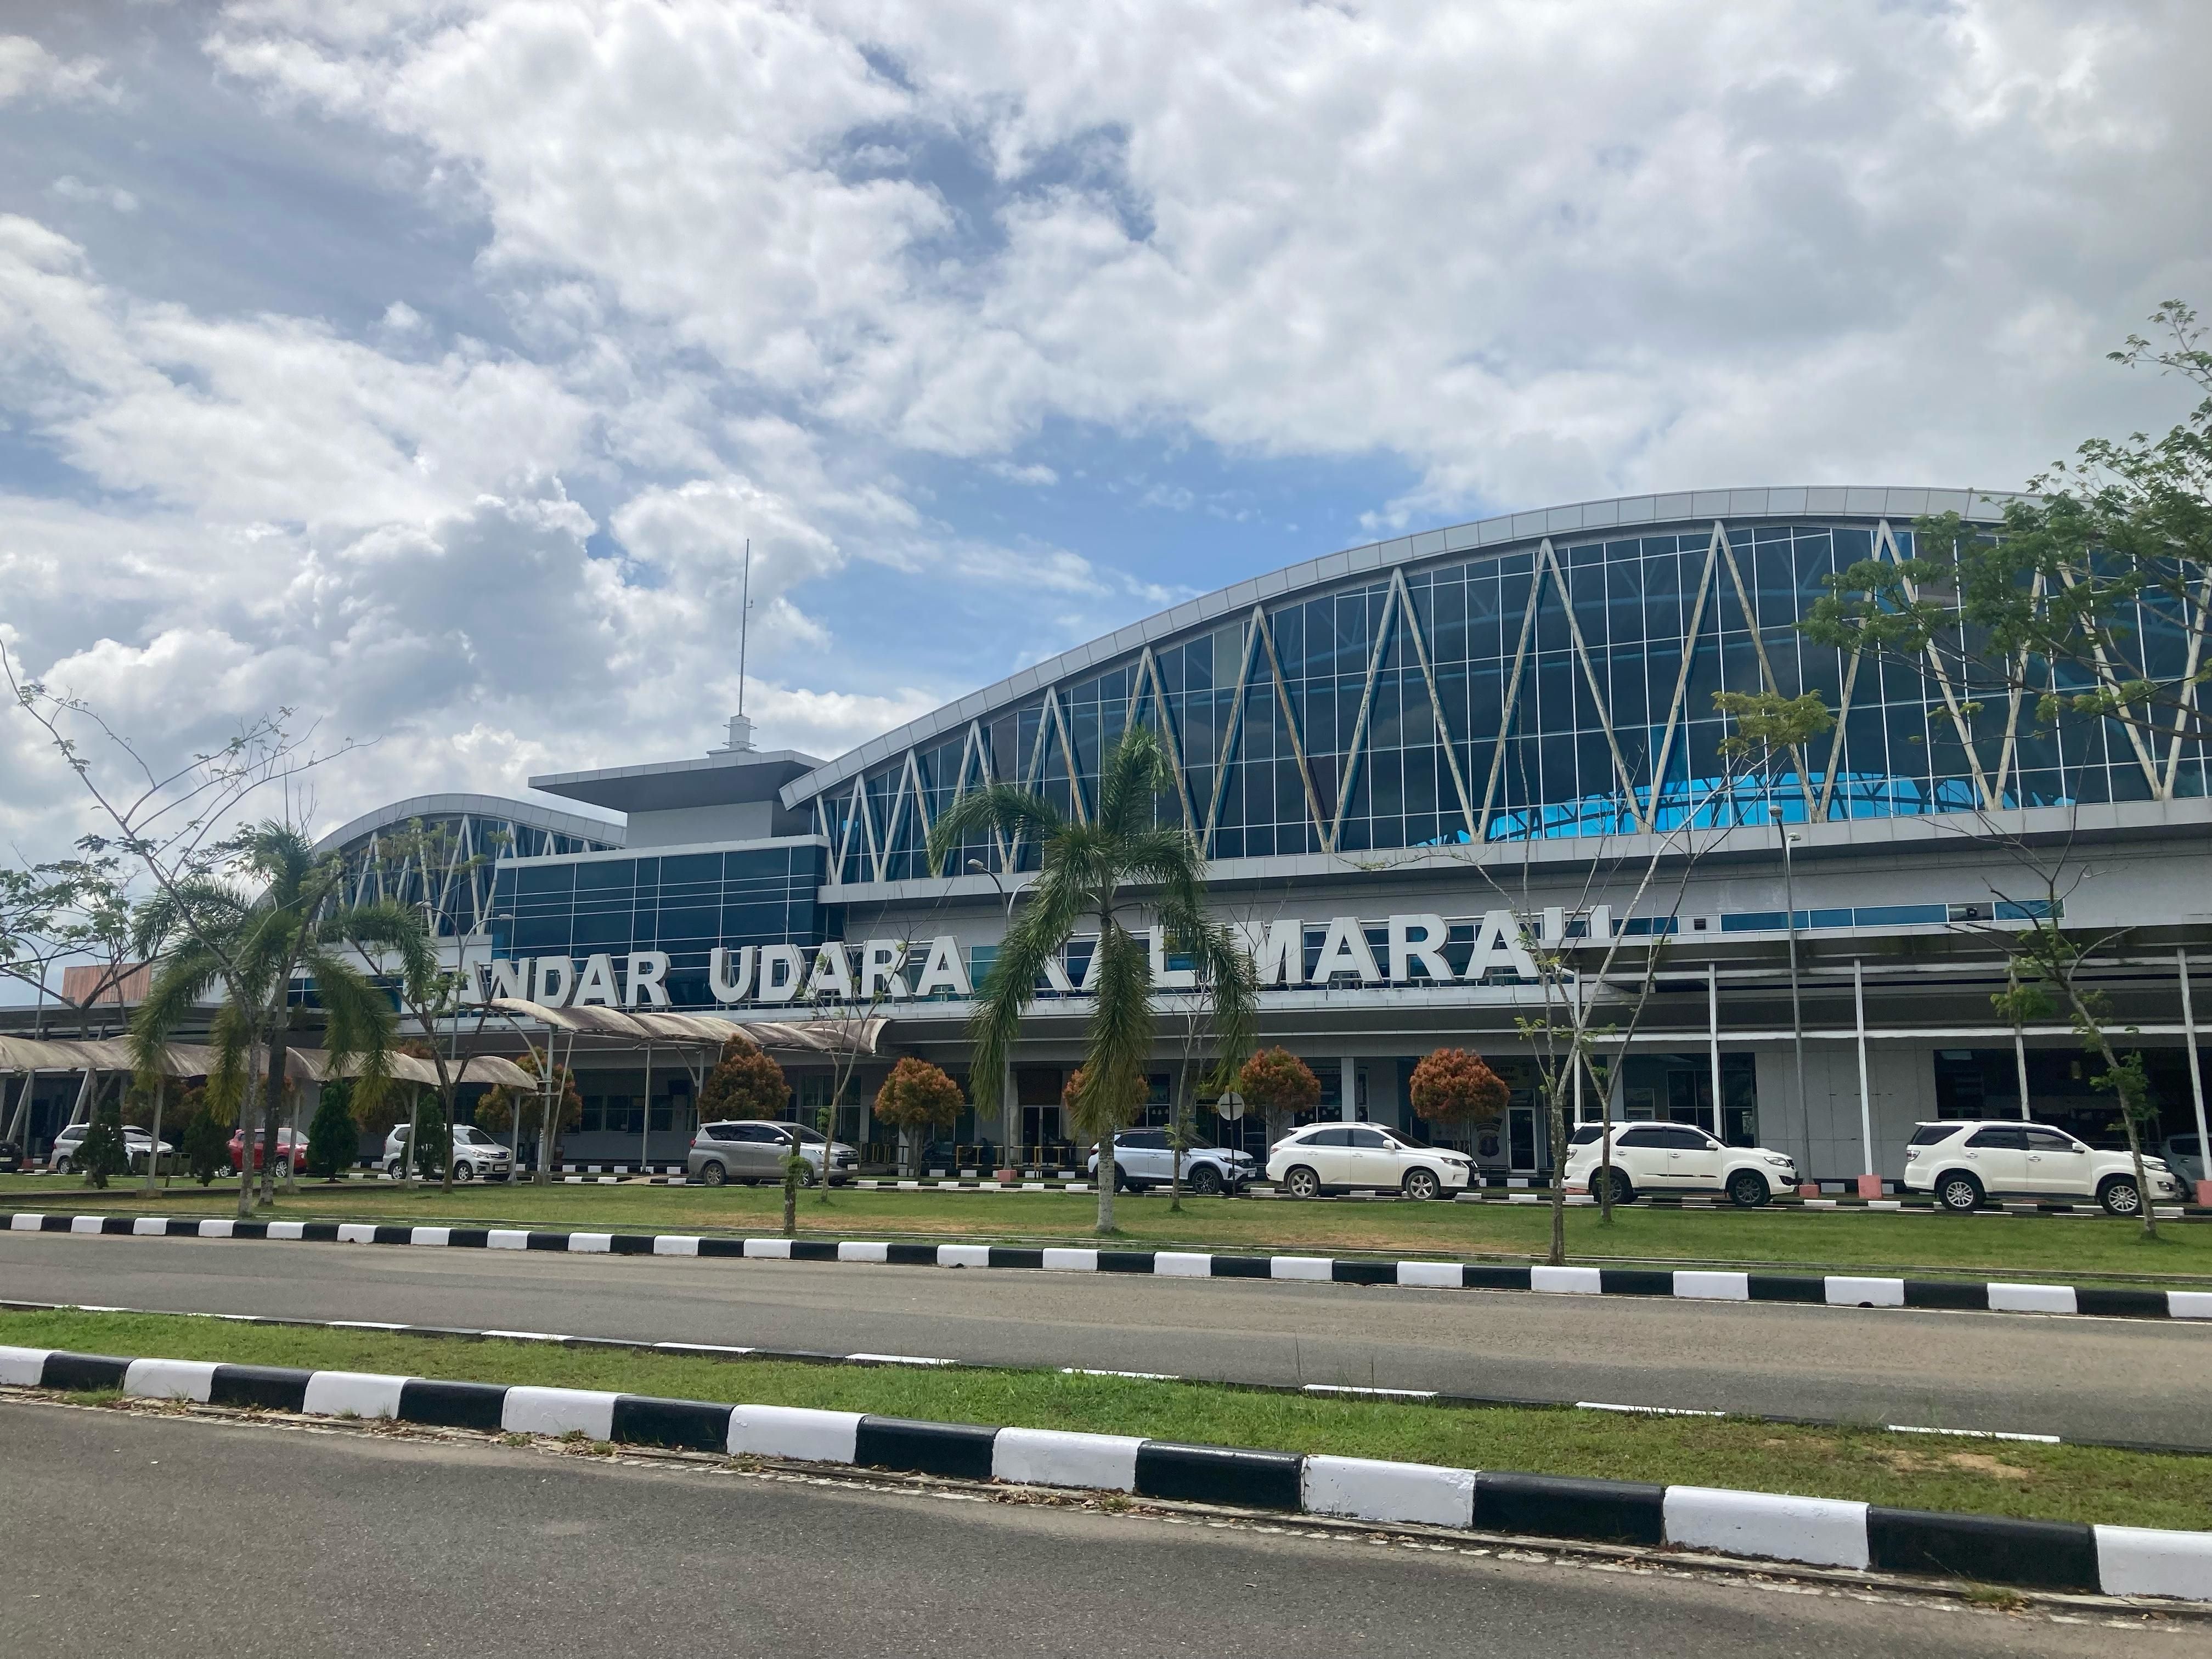 Foto Bandara Gedung Terminal Bandara Kalimarau